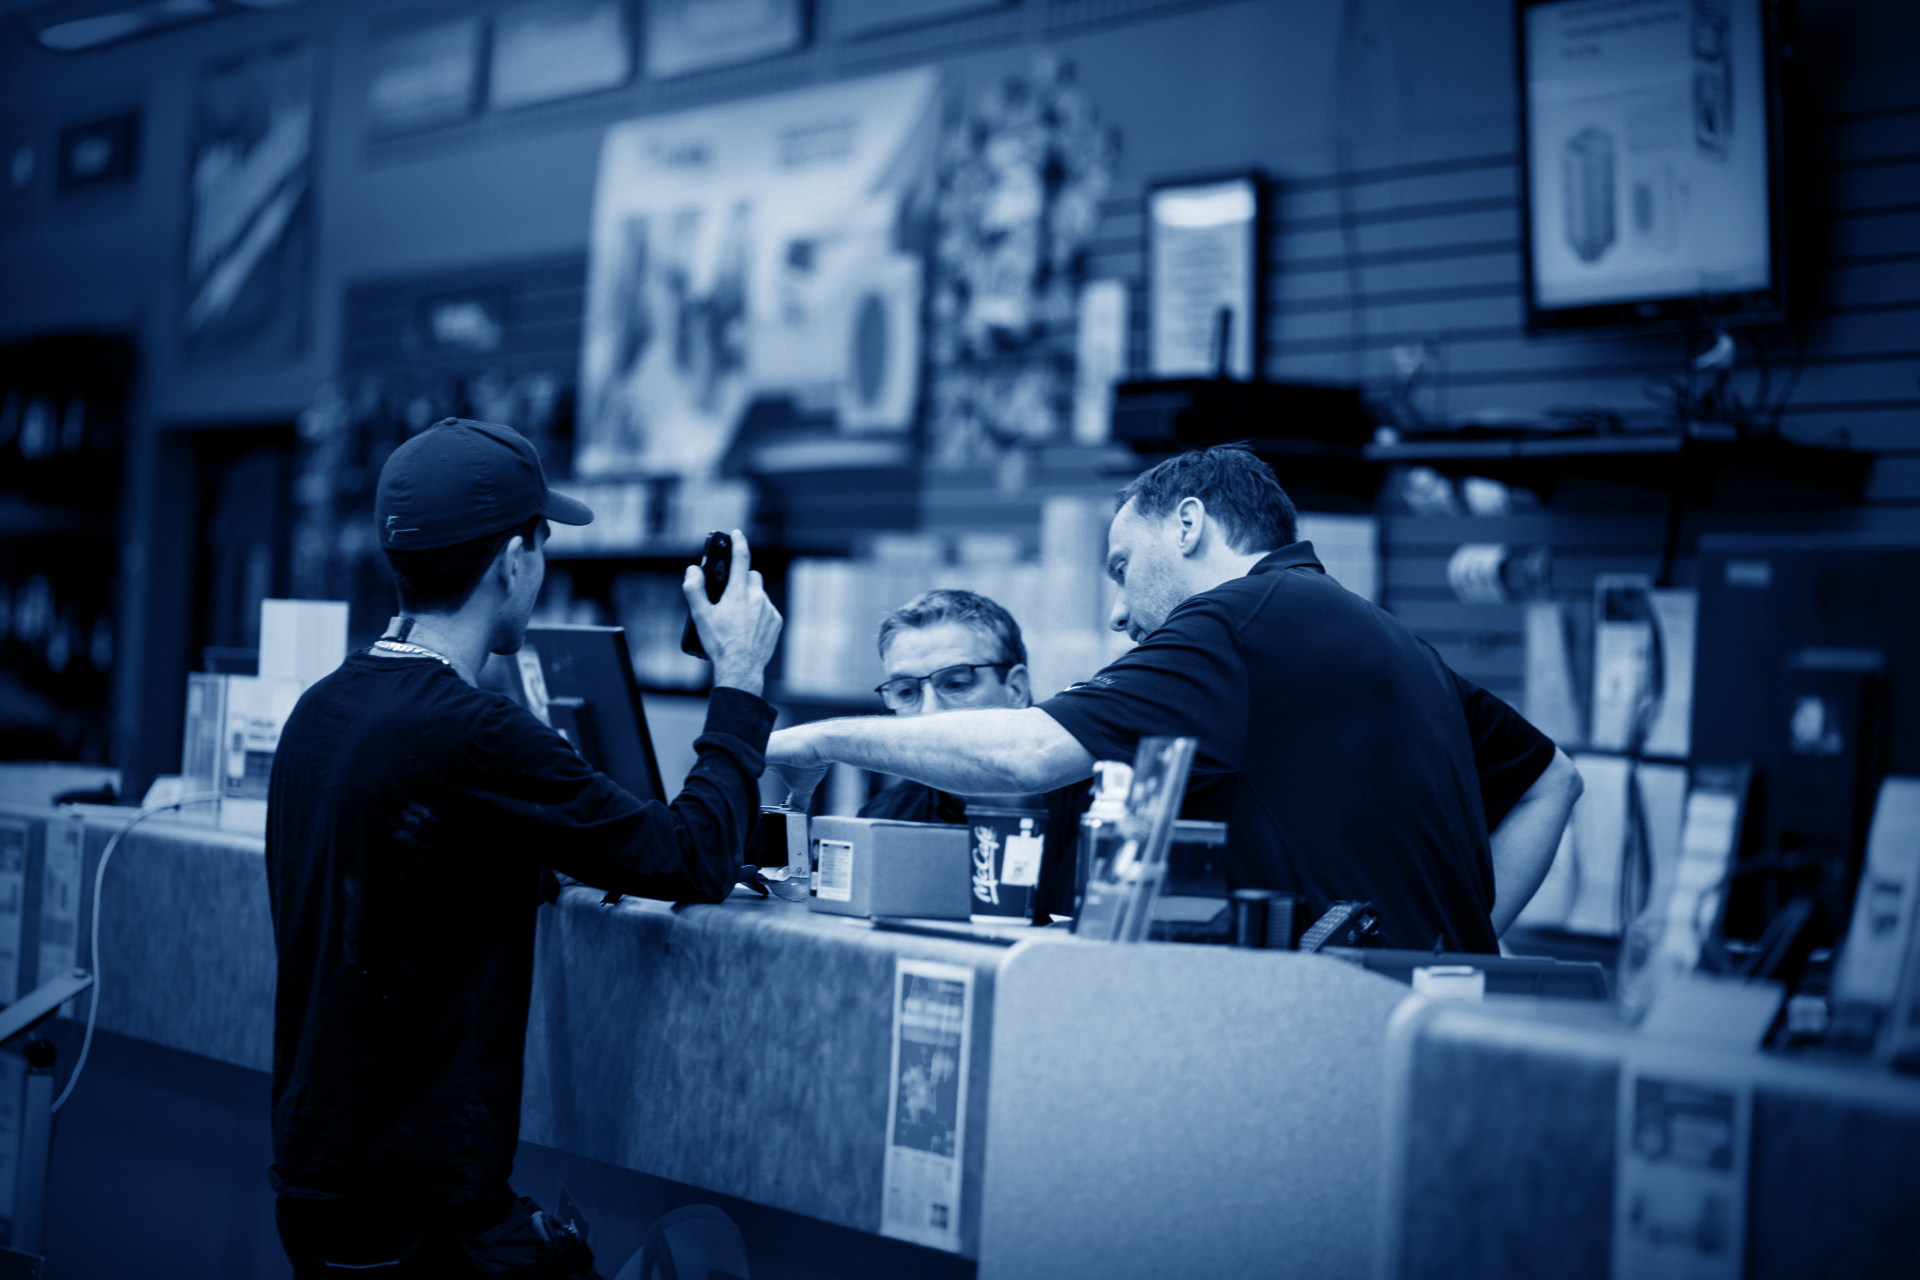 rsl sales associates assisting customer at counter